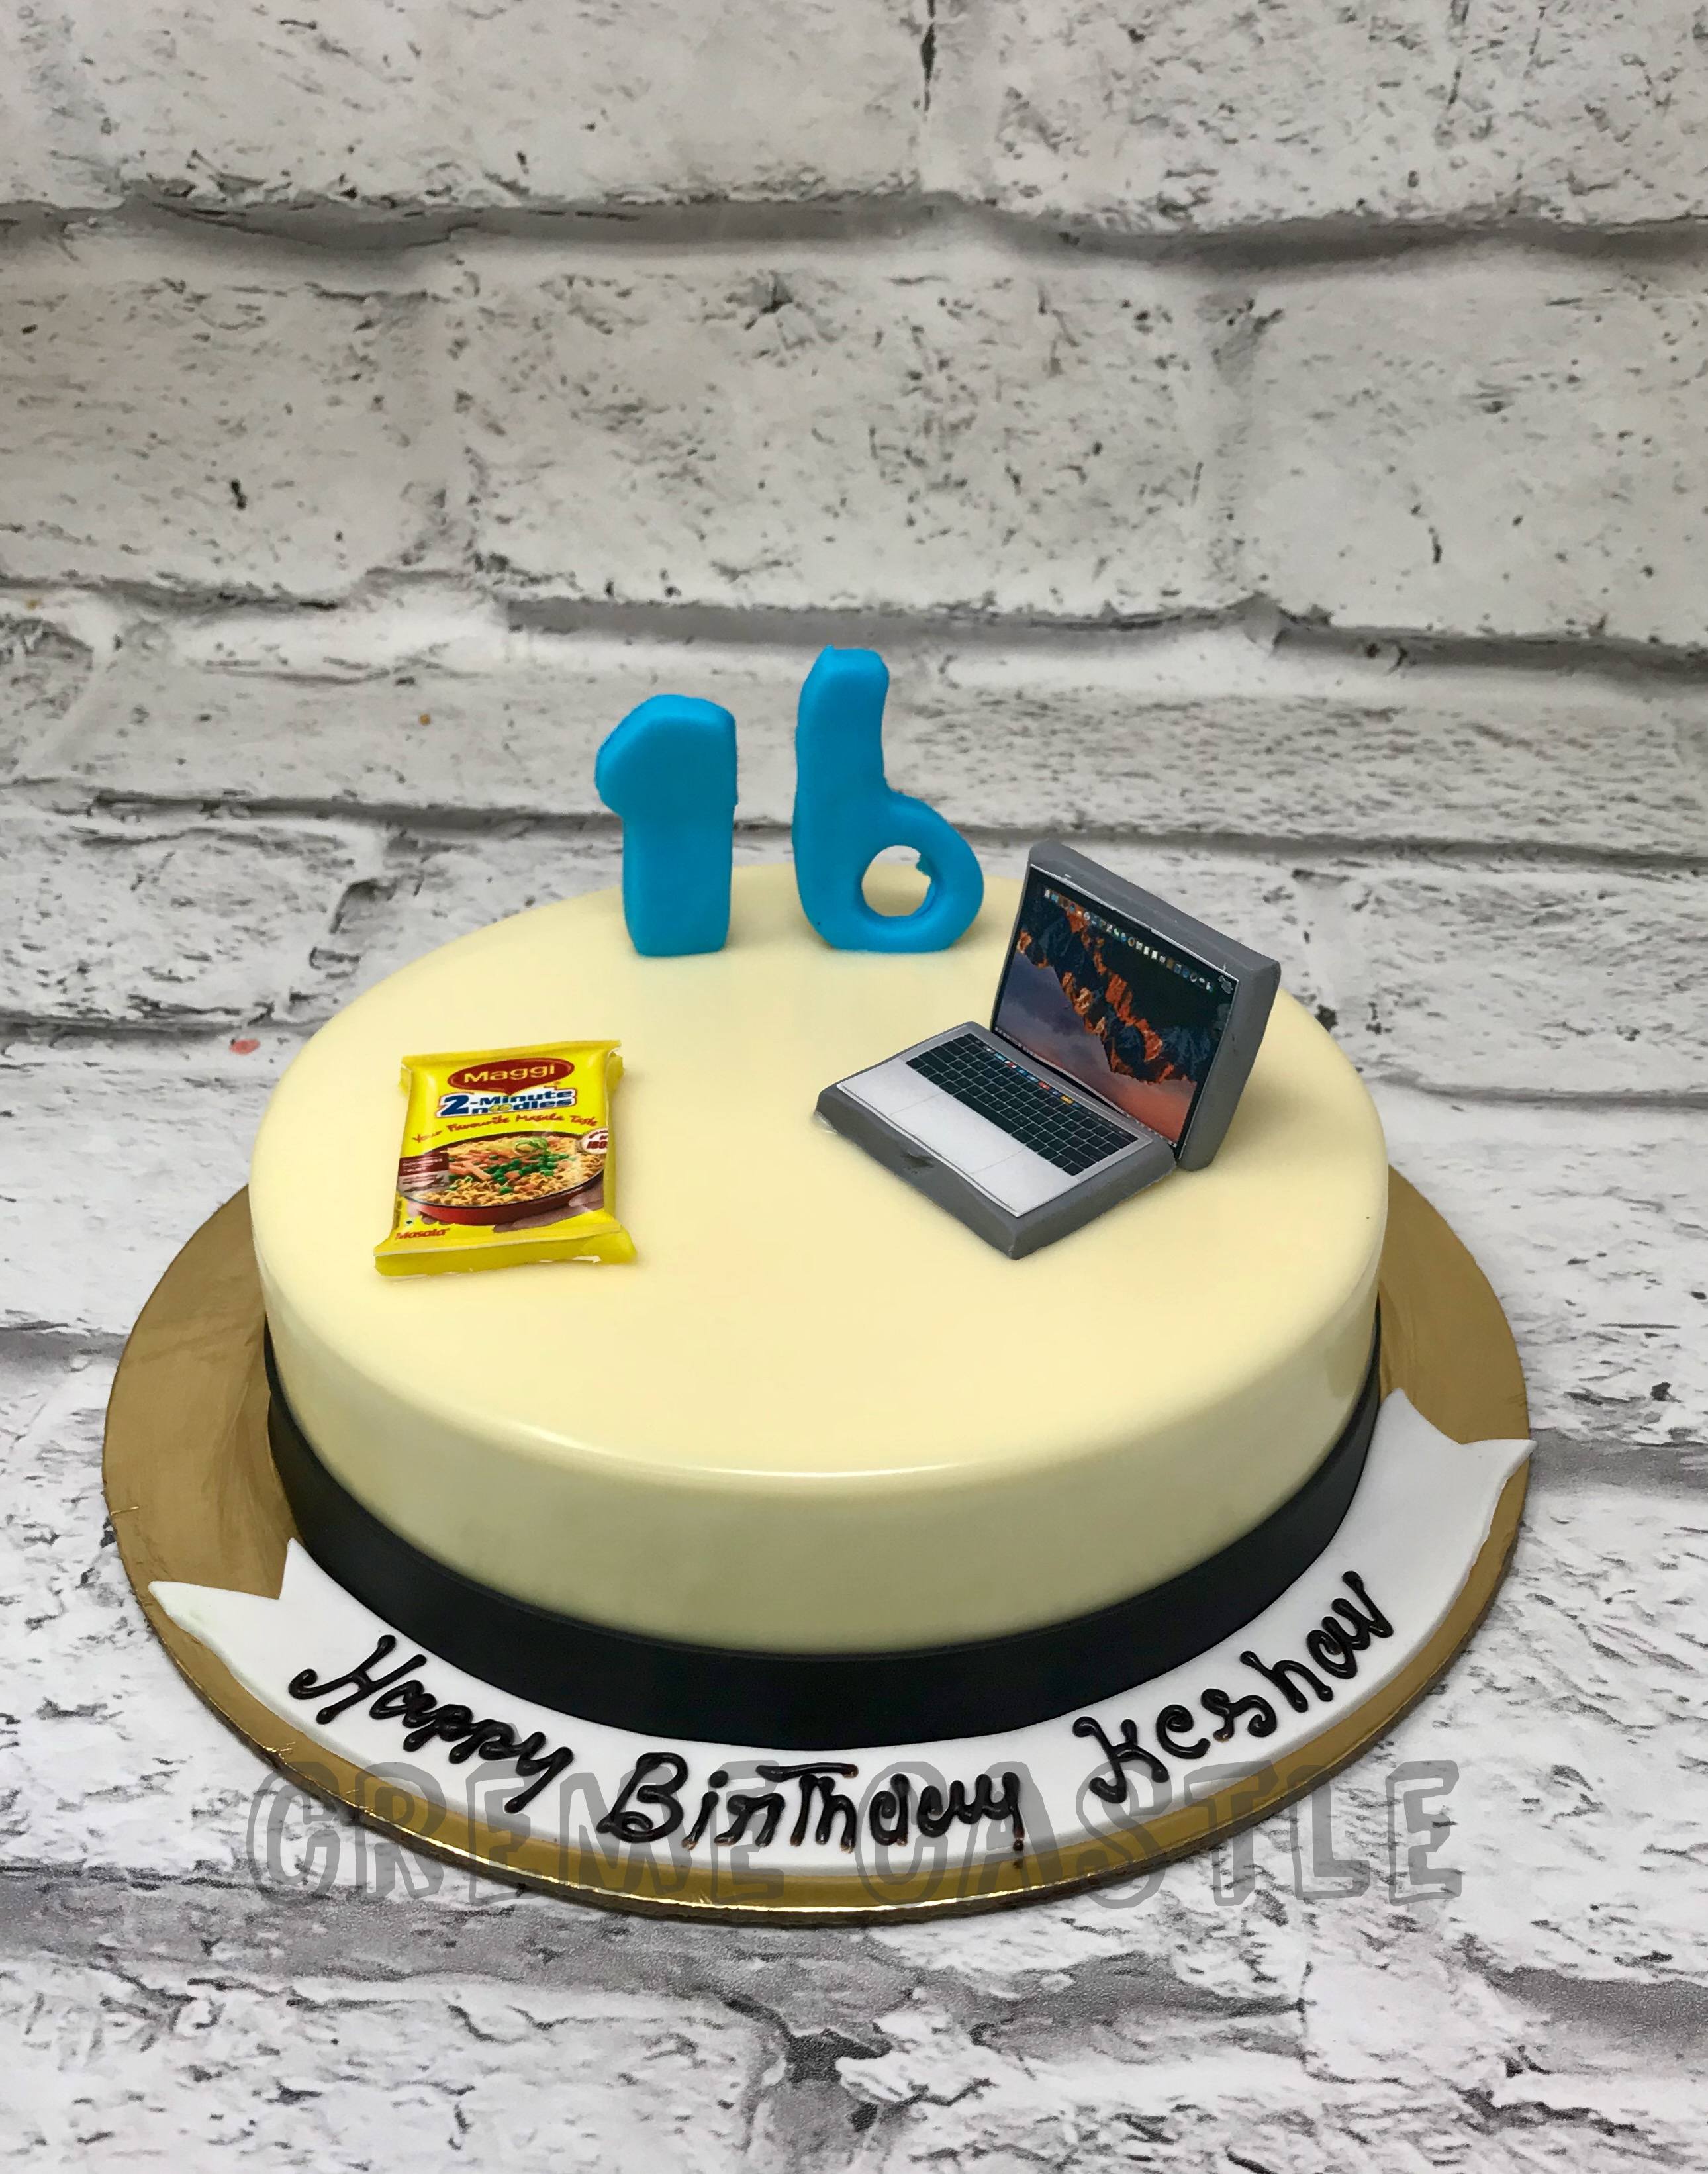 كيك مبرمج Computer engineer cake - مخابز وحلويات افندينا - المحل الاول  والافضل في السعوديه للحلويات